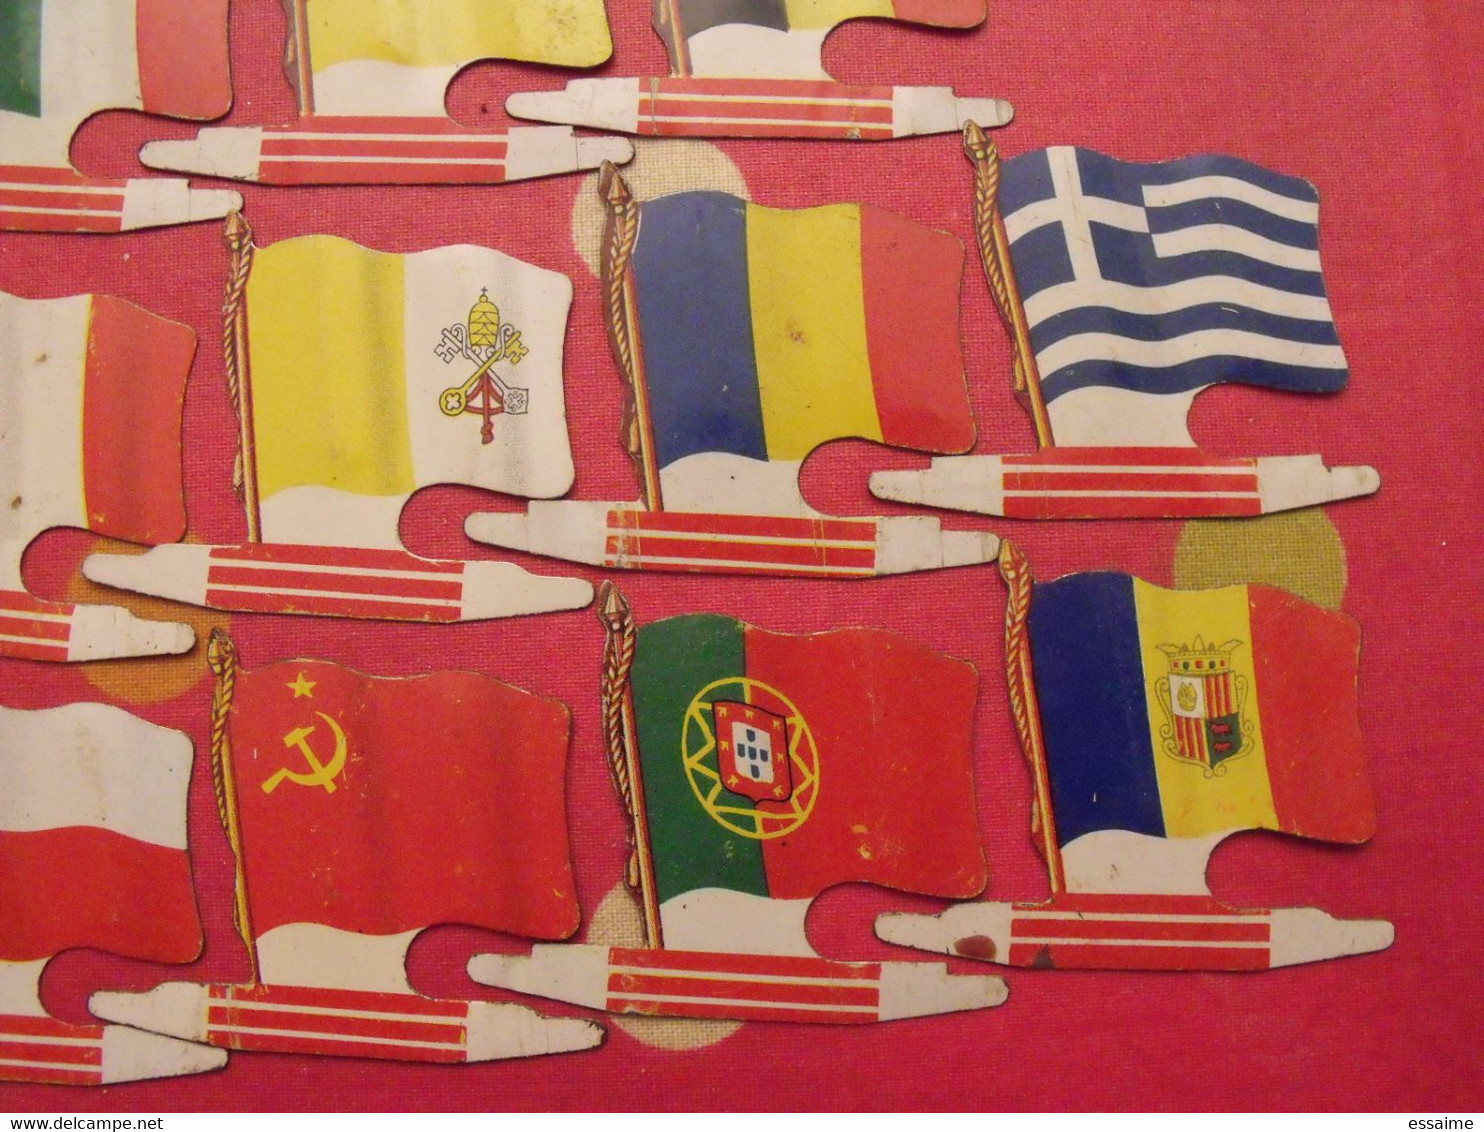 18 Plaquettes Drapeaux L'Alsacienne Drapeaurama Andorre Grèce Portugal Finlande Vatican URSS Monaco ... Drapeau. Lot 12 - Tin Signs (after1960)